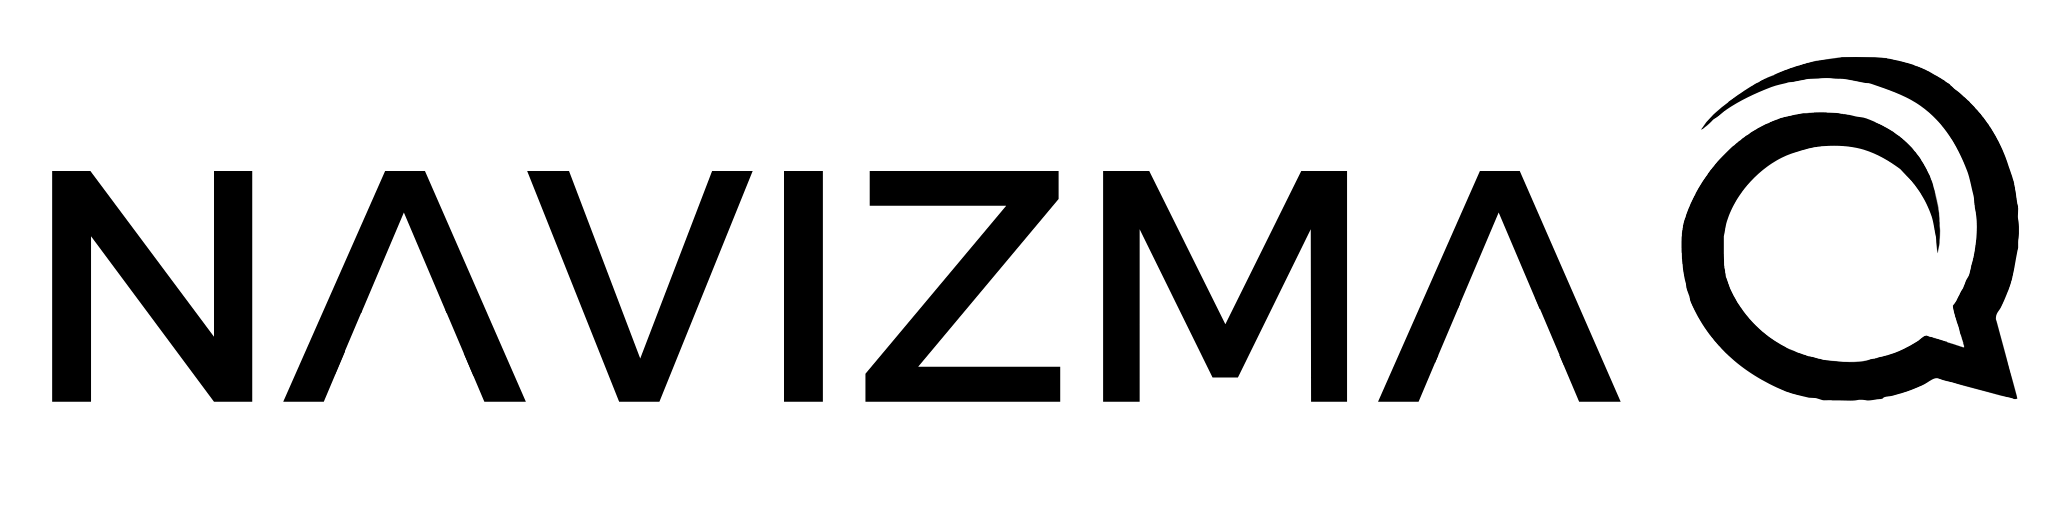 Navizmas logotype